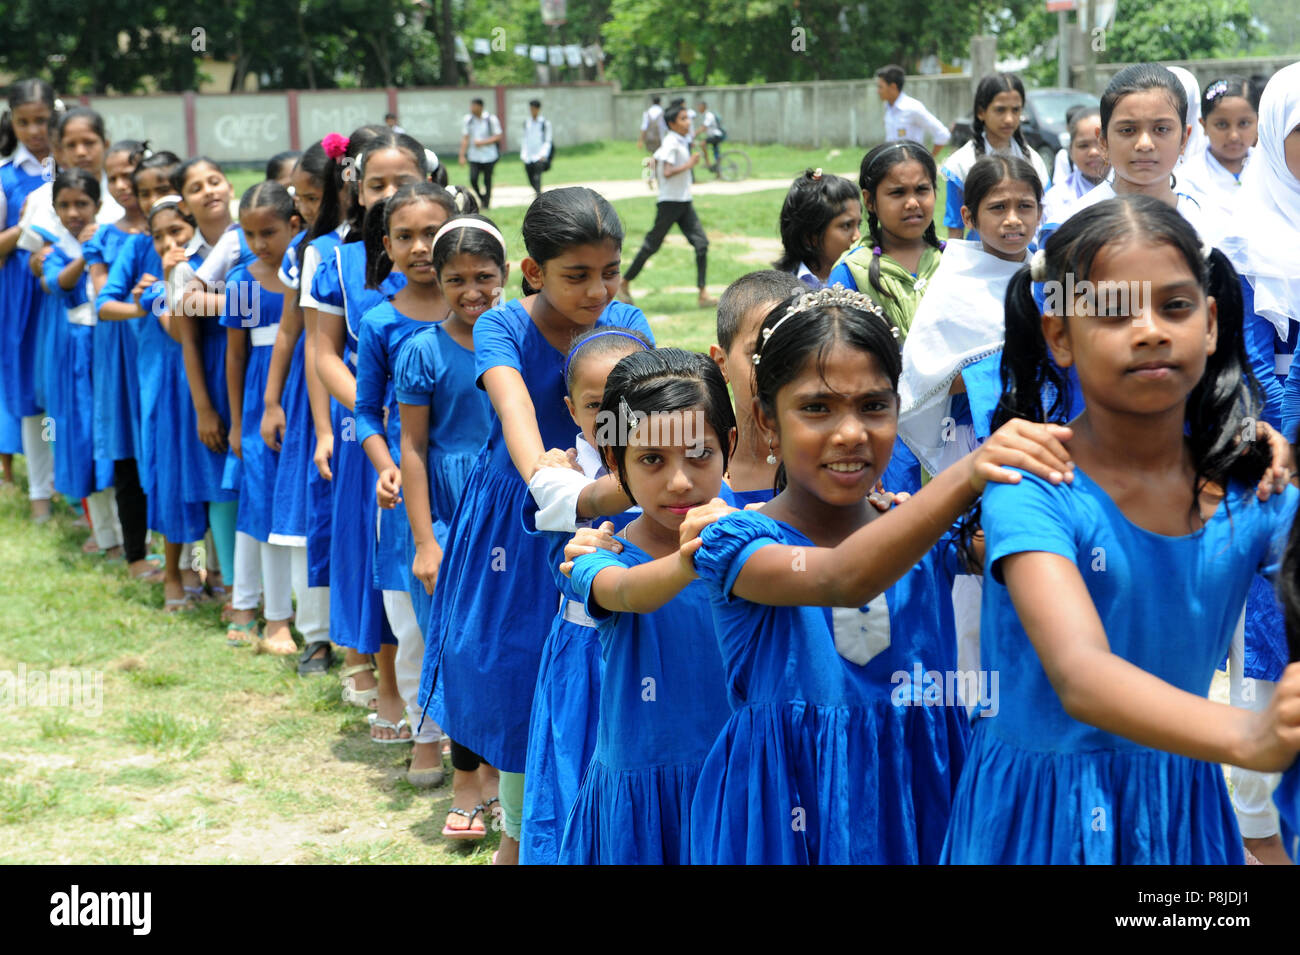 Dhaka, Bangladesh - 05 juin 2016 : les pratiques des étudiants du Bangladesh l'exercice physique à l'école à Narayanganj, près de Dhaka, Bangladesh. Chaque jour, le s Banque D'Images